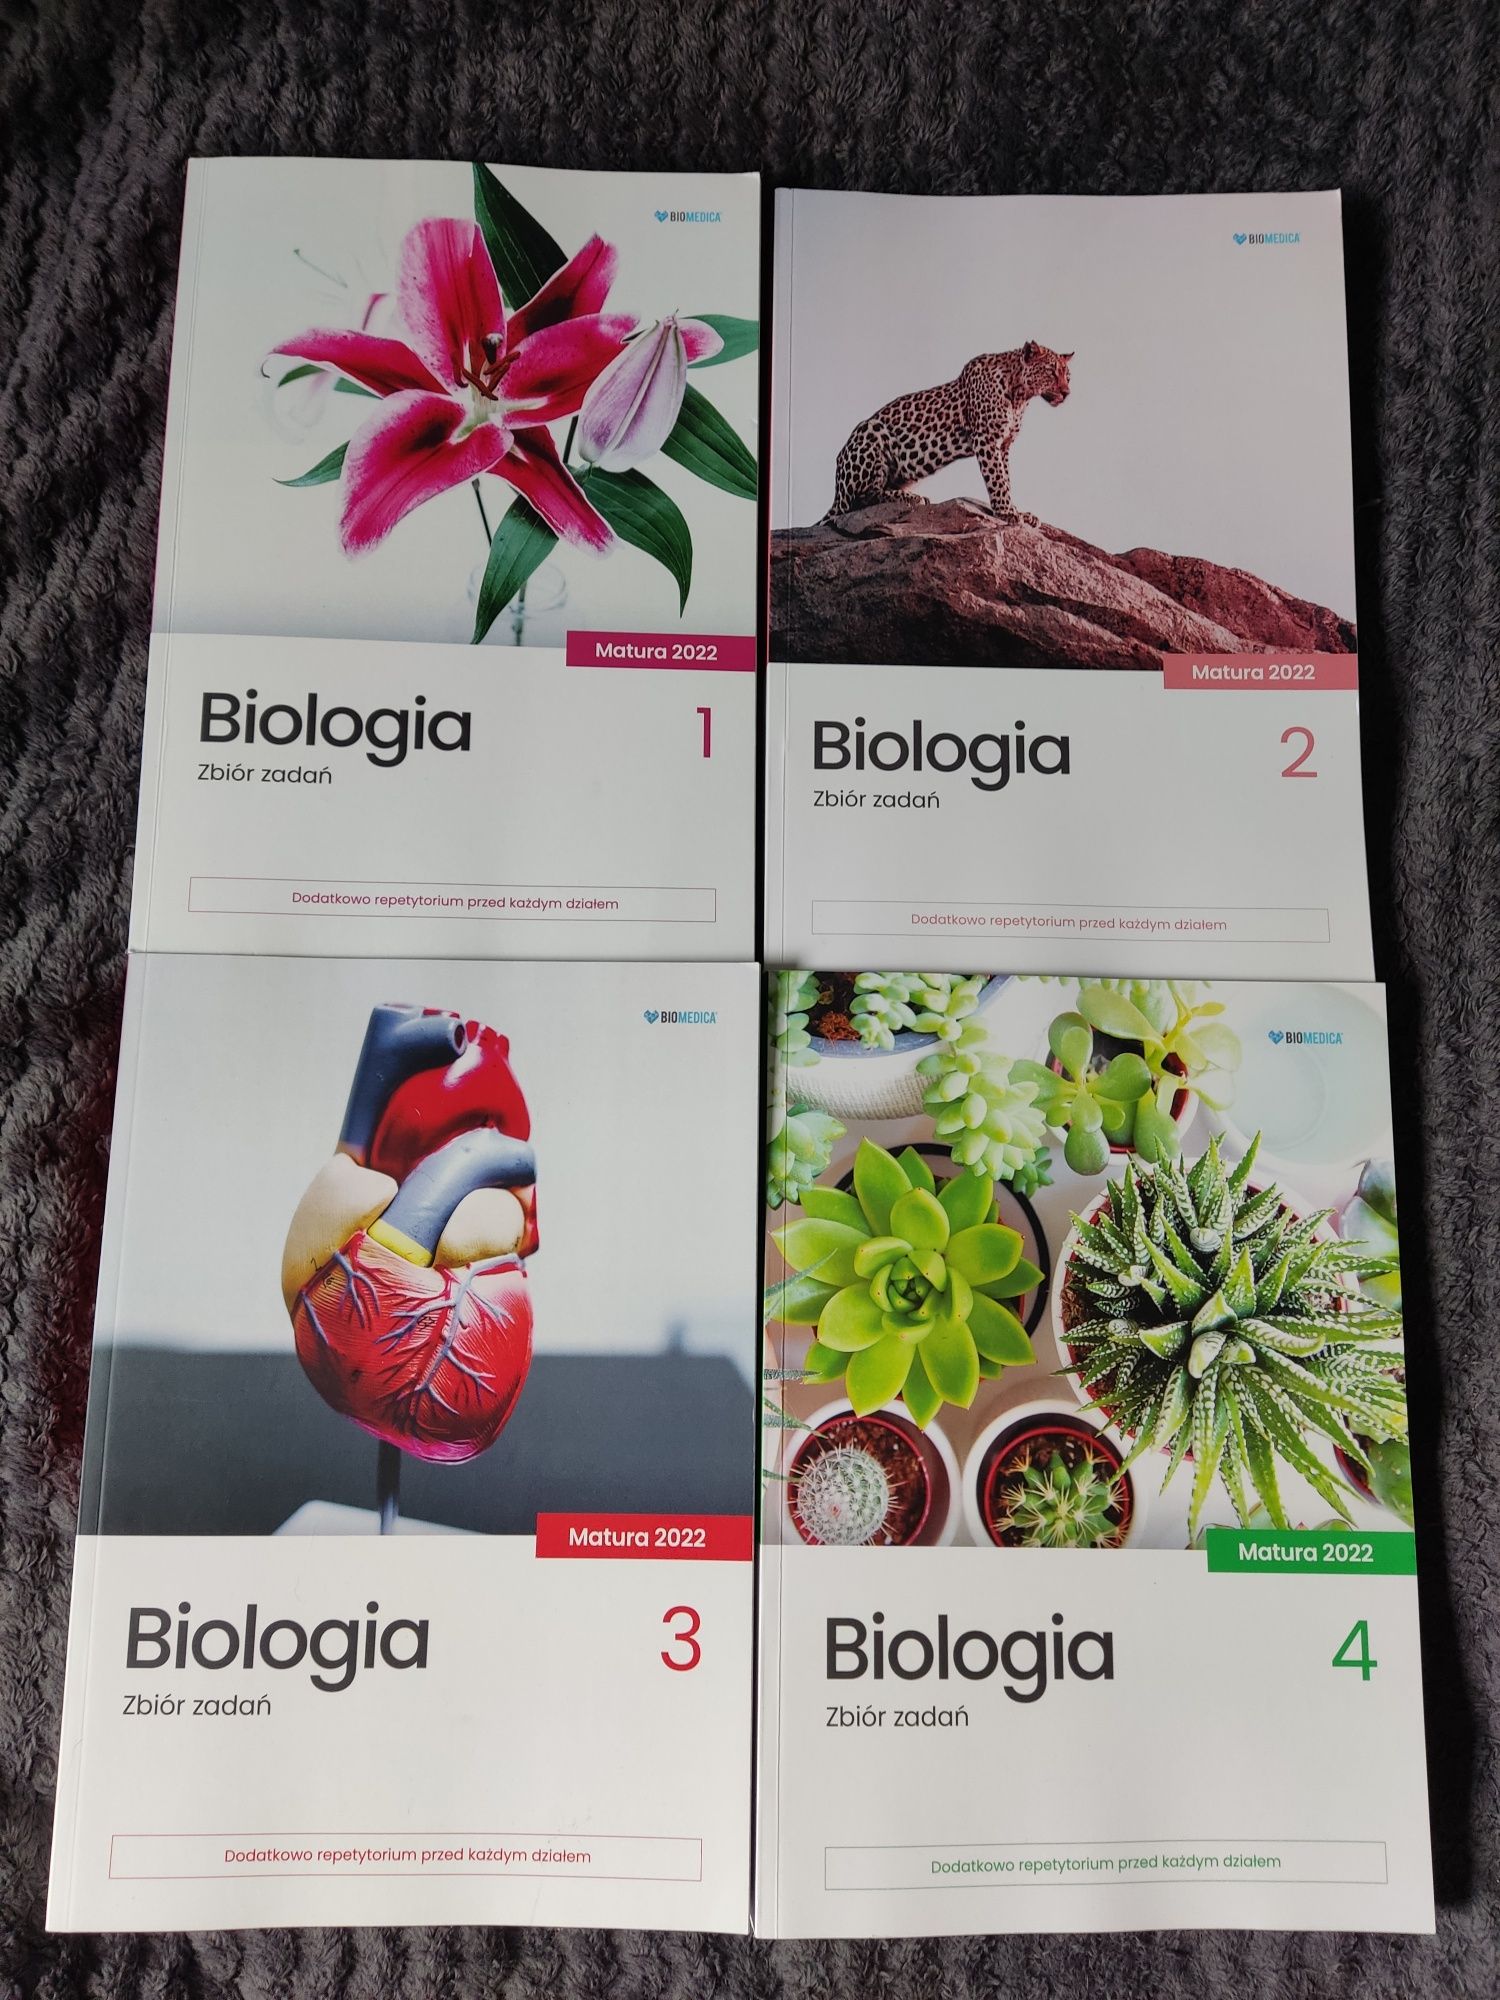 Biomedica biologia zbiory zadań - kompletny zestaw (4 książki)